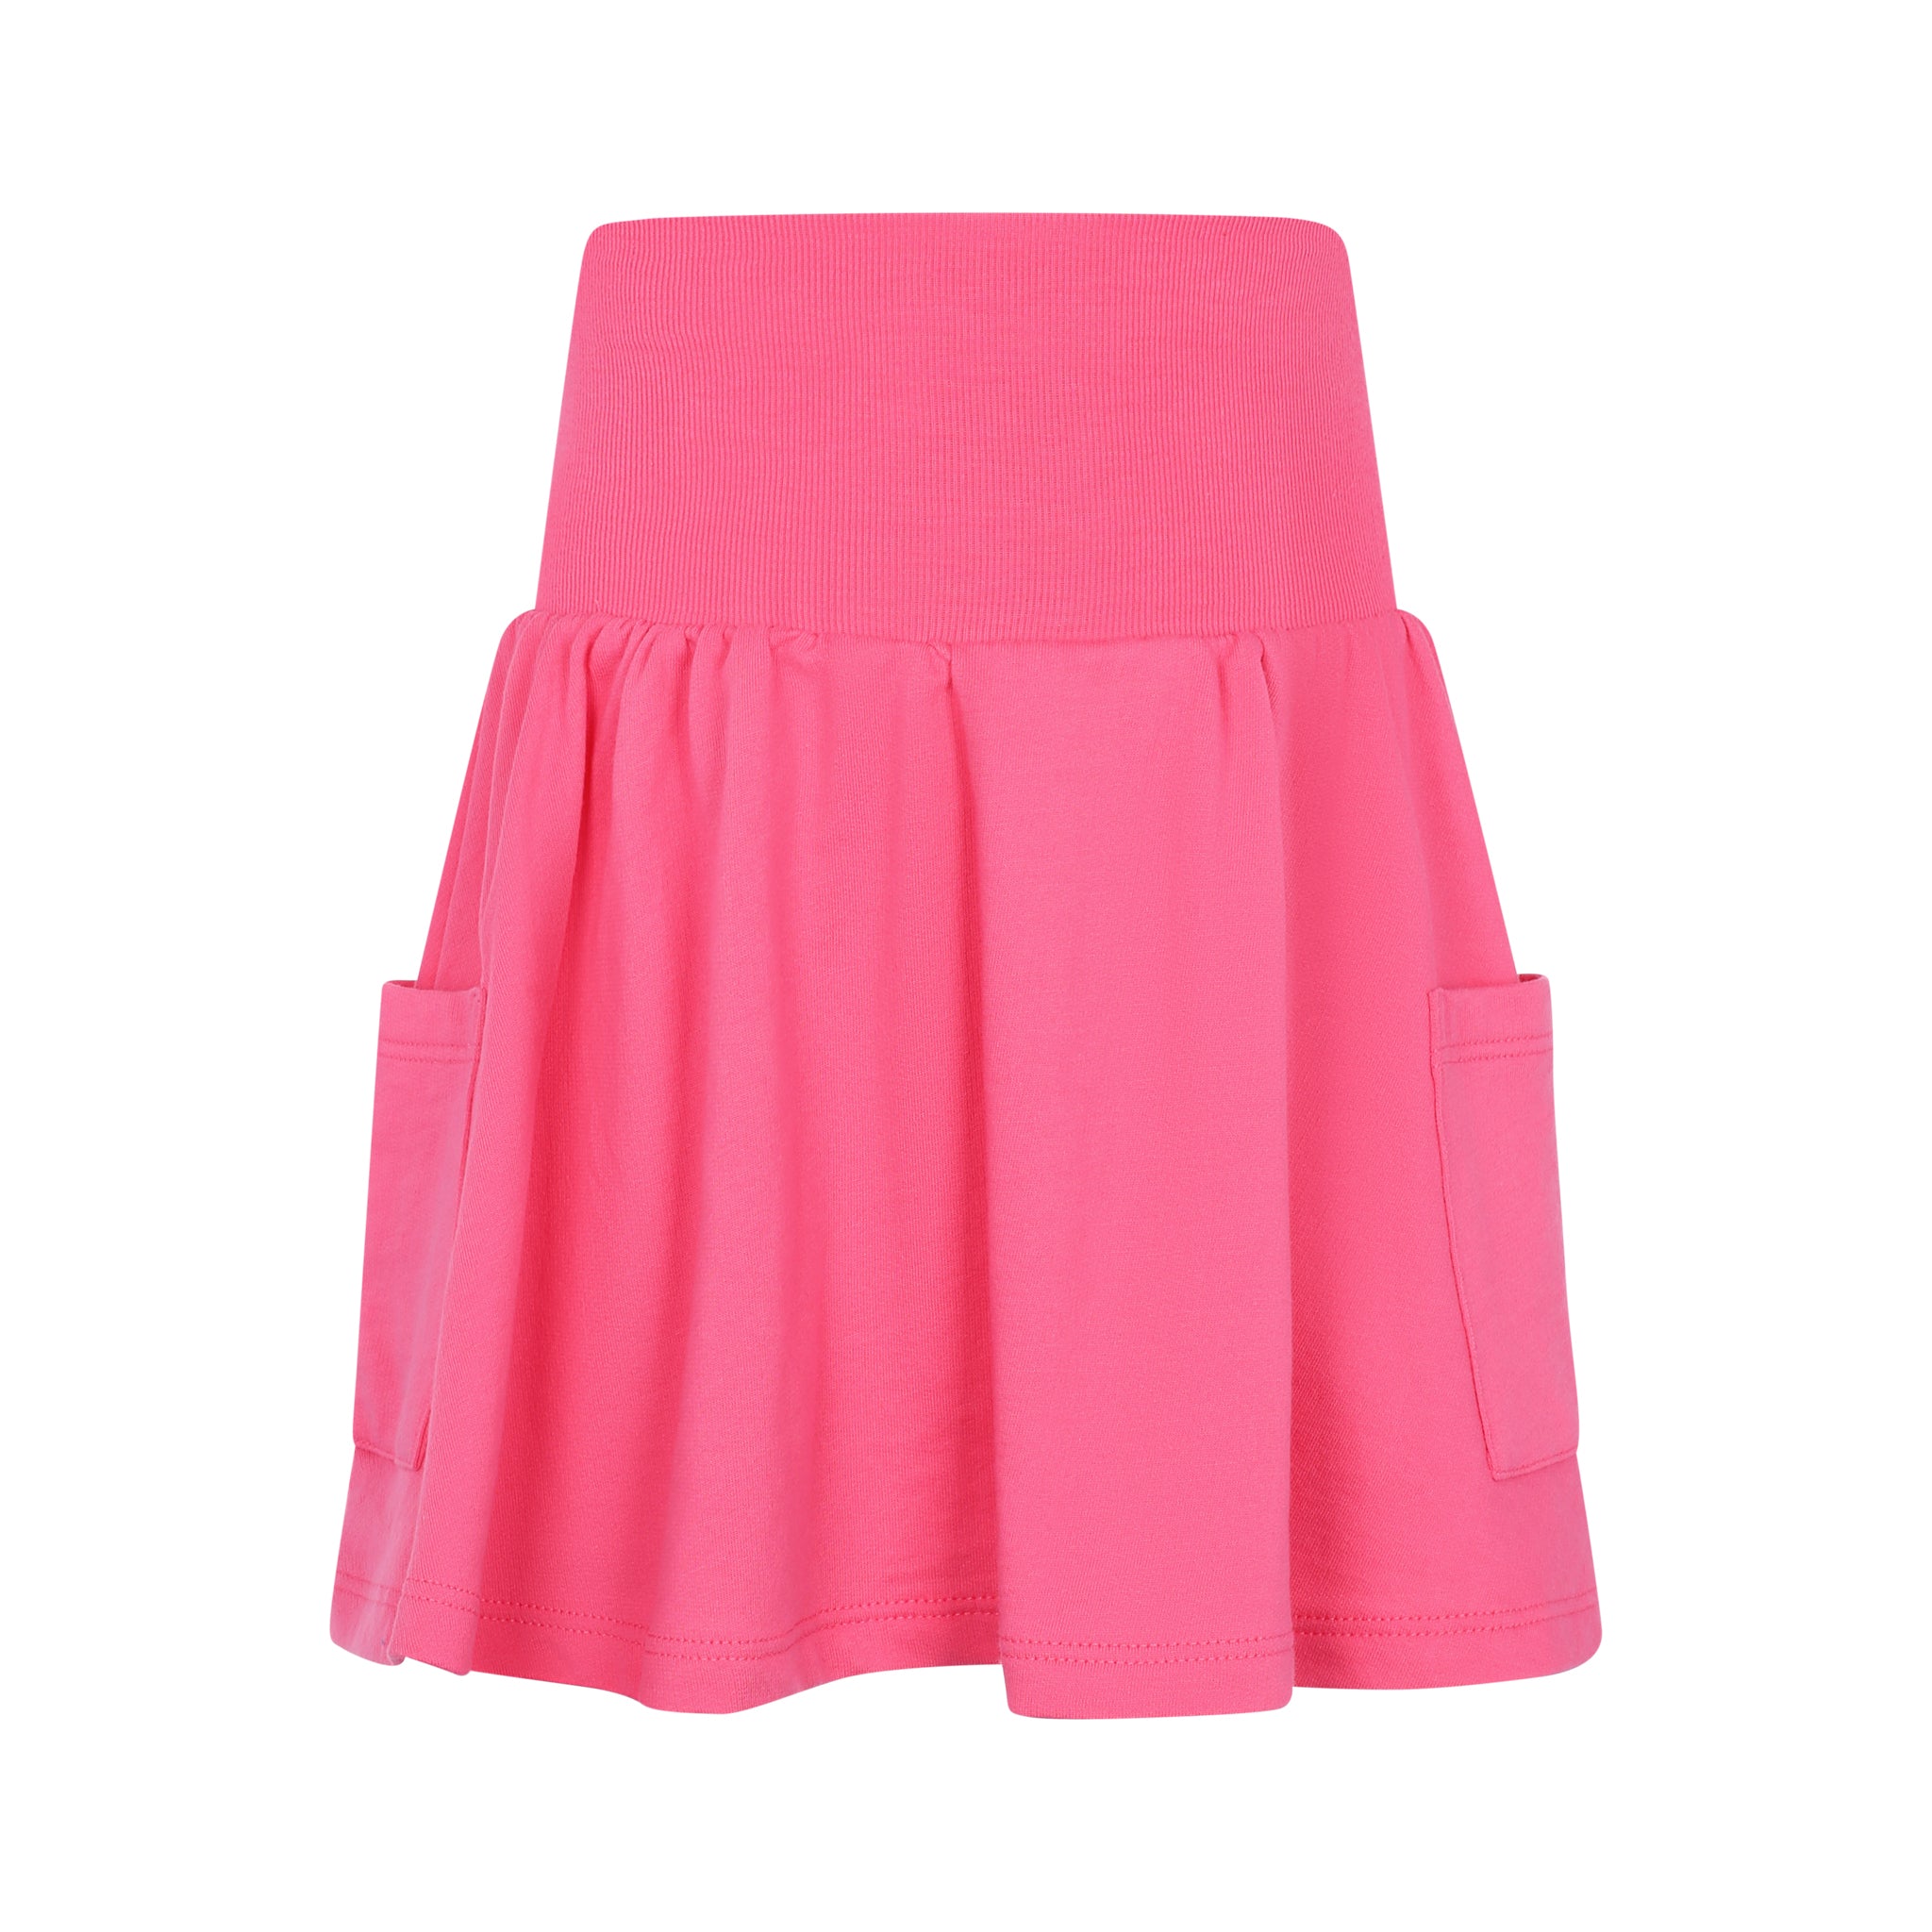 Hot Pink Short Tiered Skirt